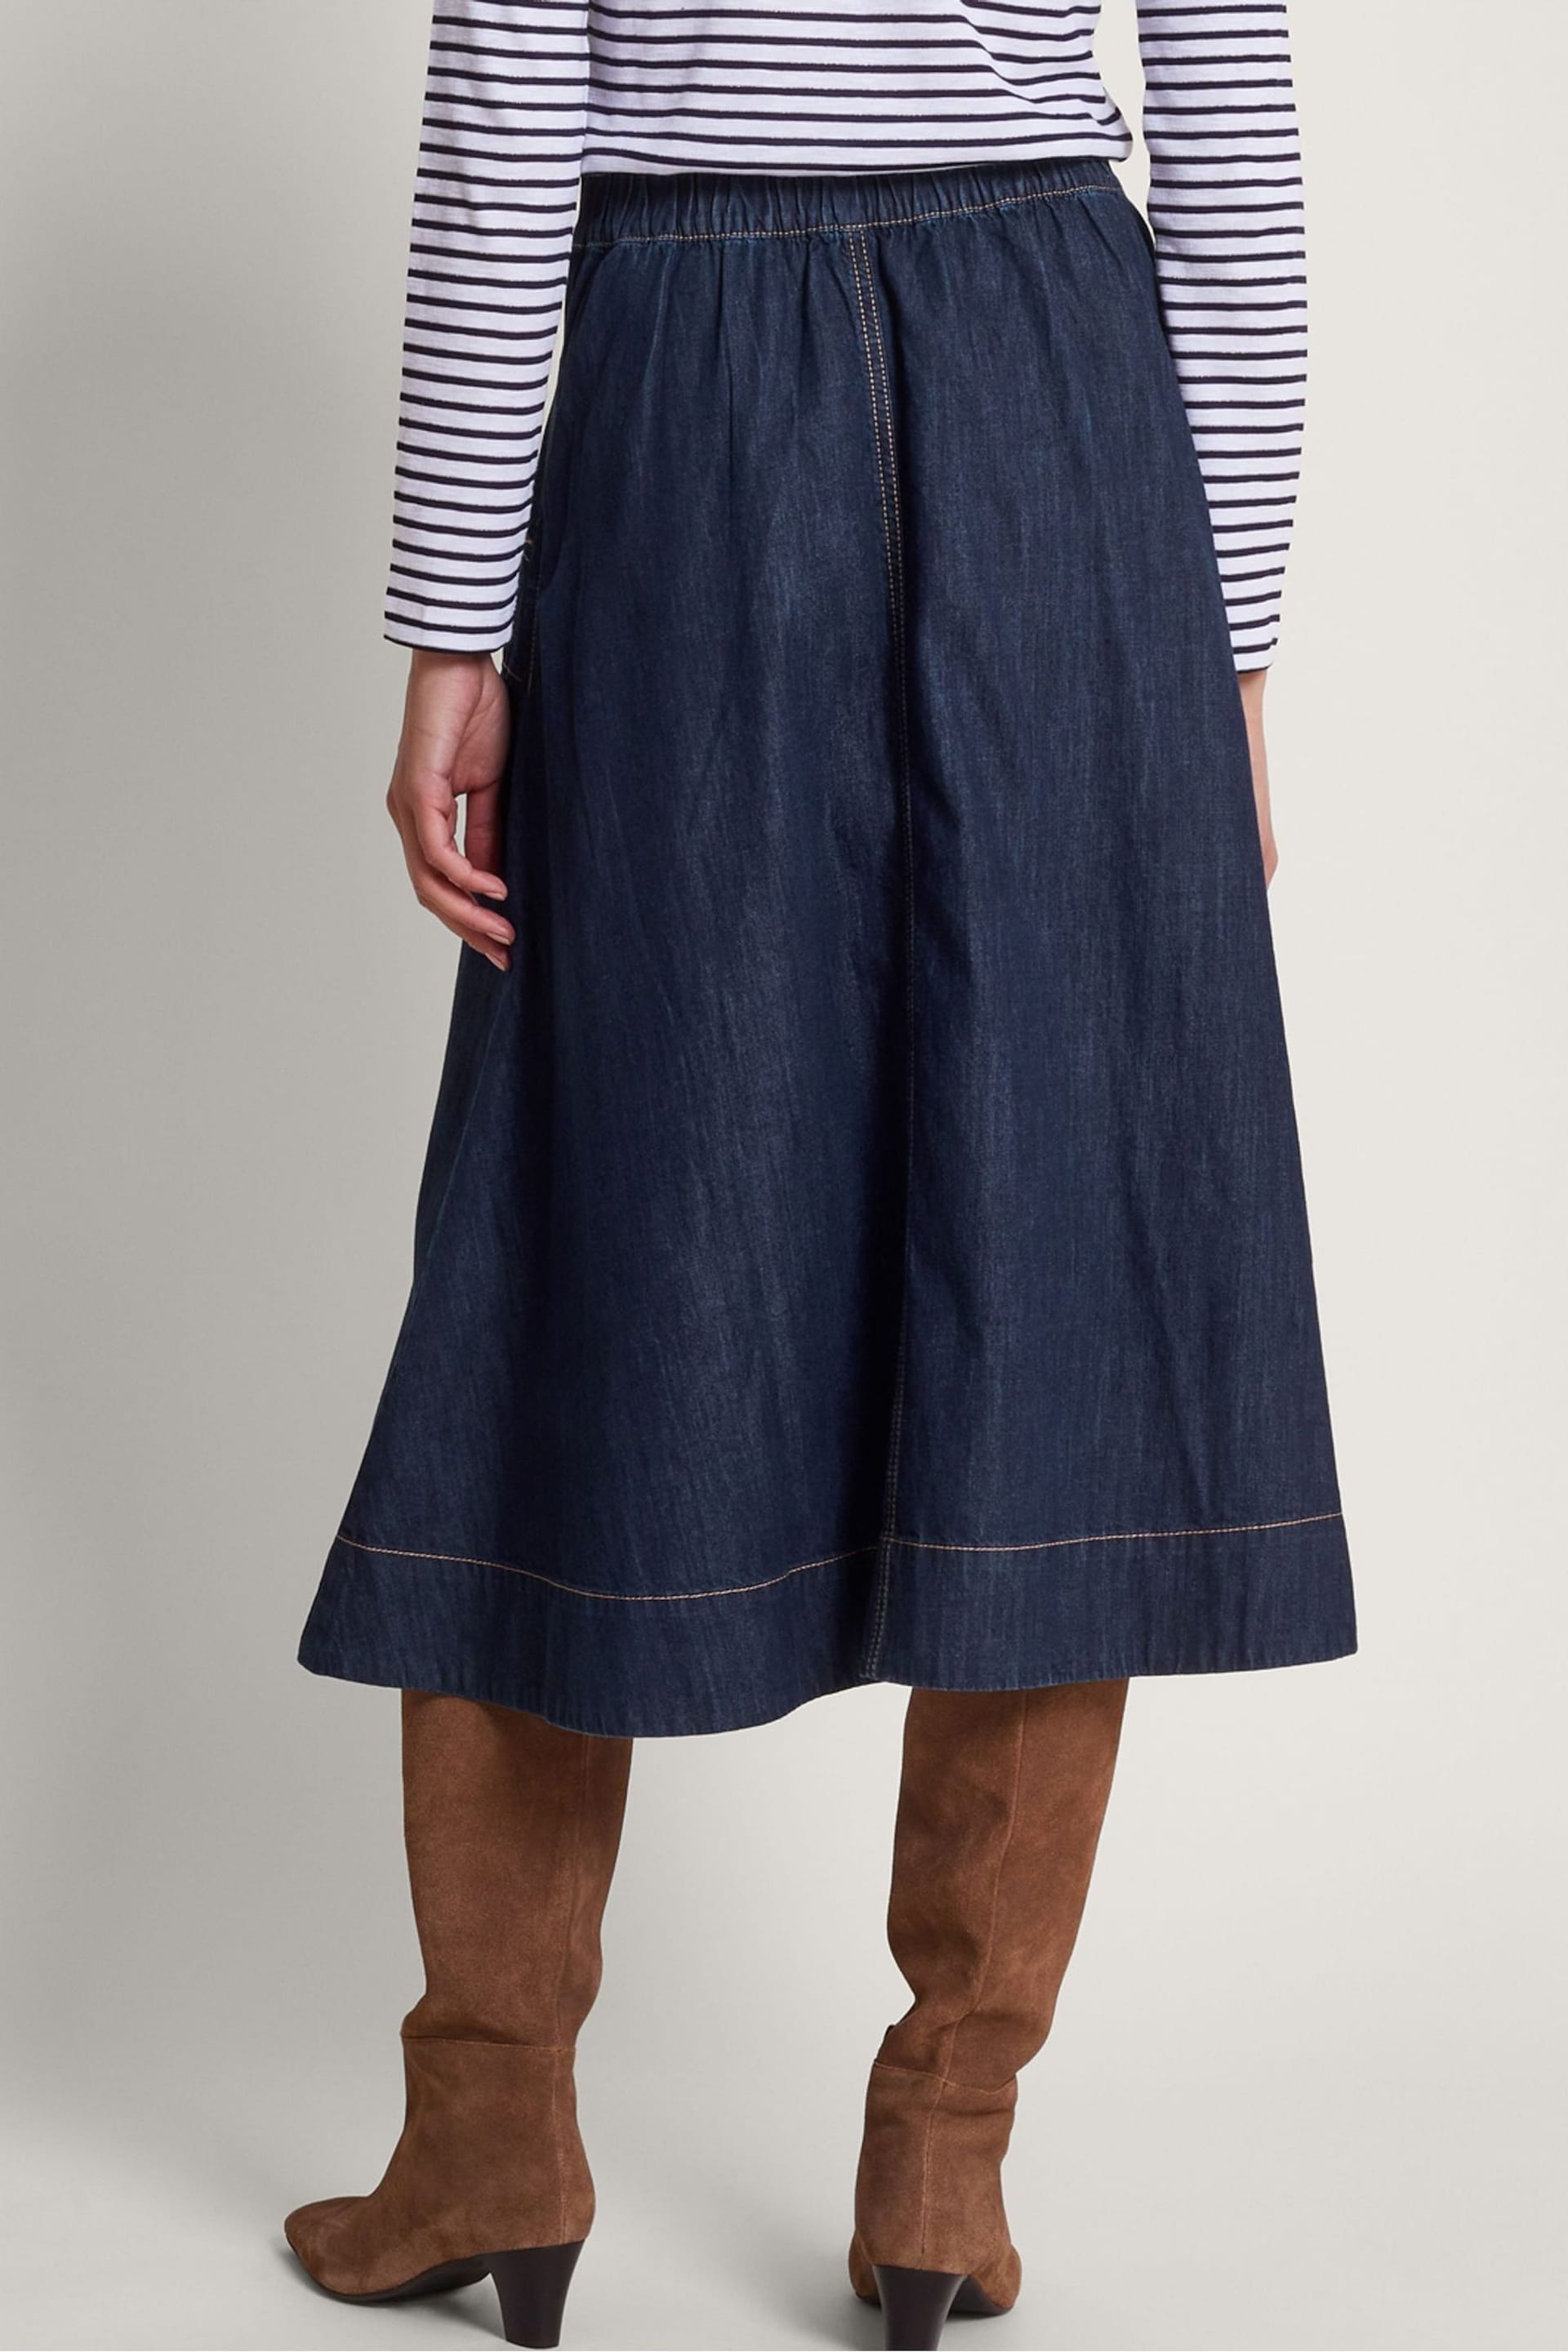 Monsoon Blue Harper Denim Skirt - Image 3 of 5